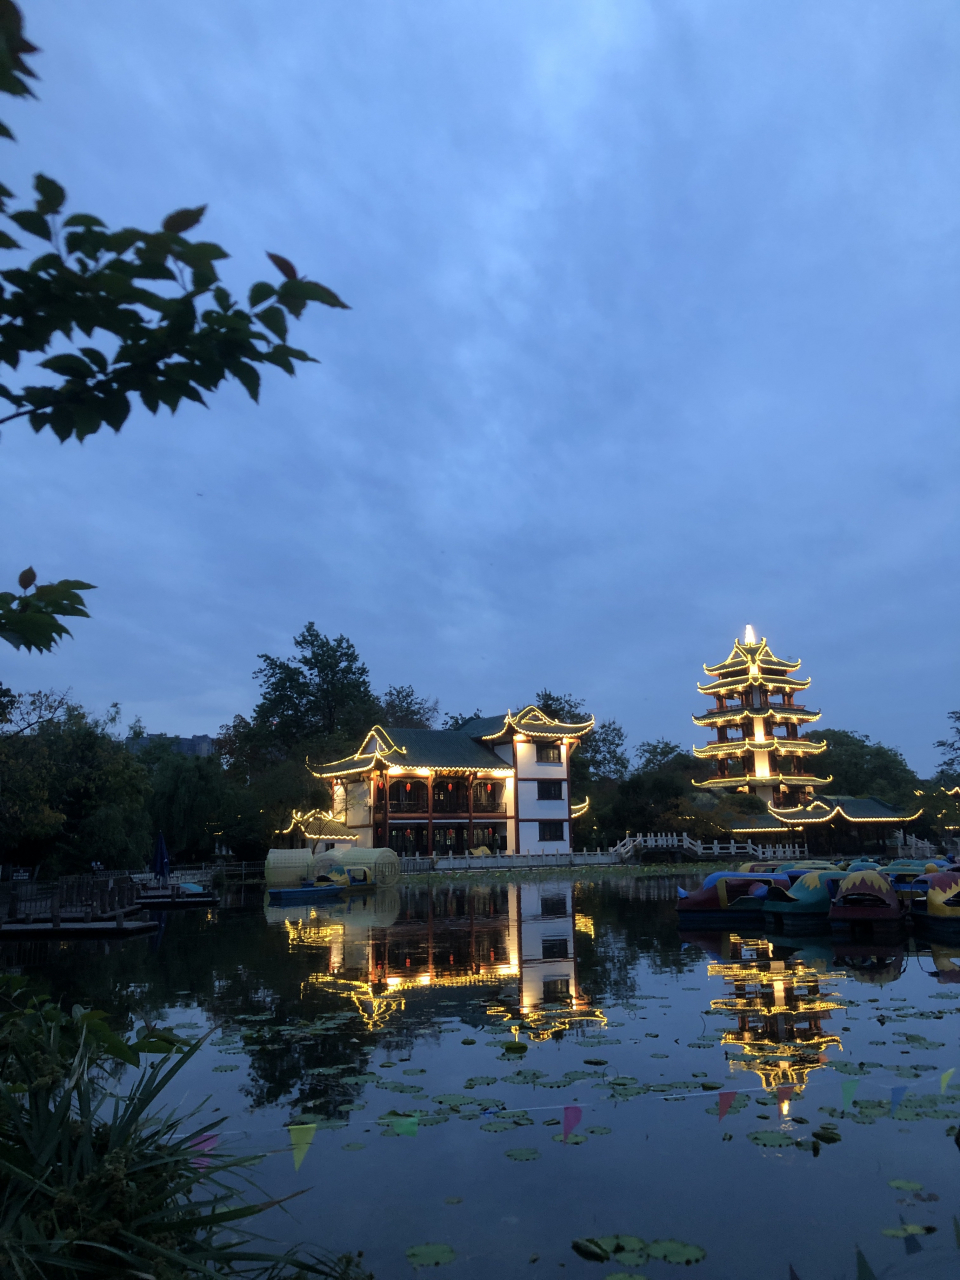 傍晚,你有去公园散步的习惯么?这是桂湖公园的夜景